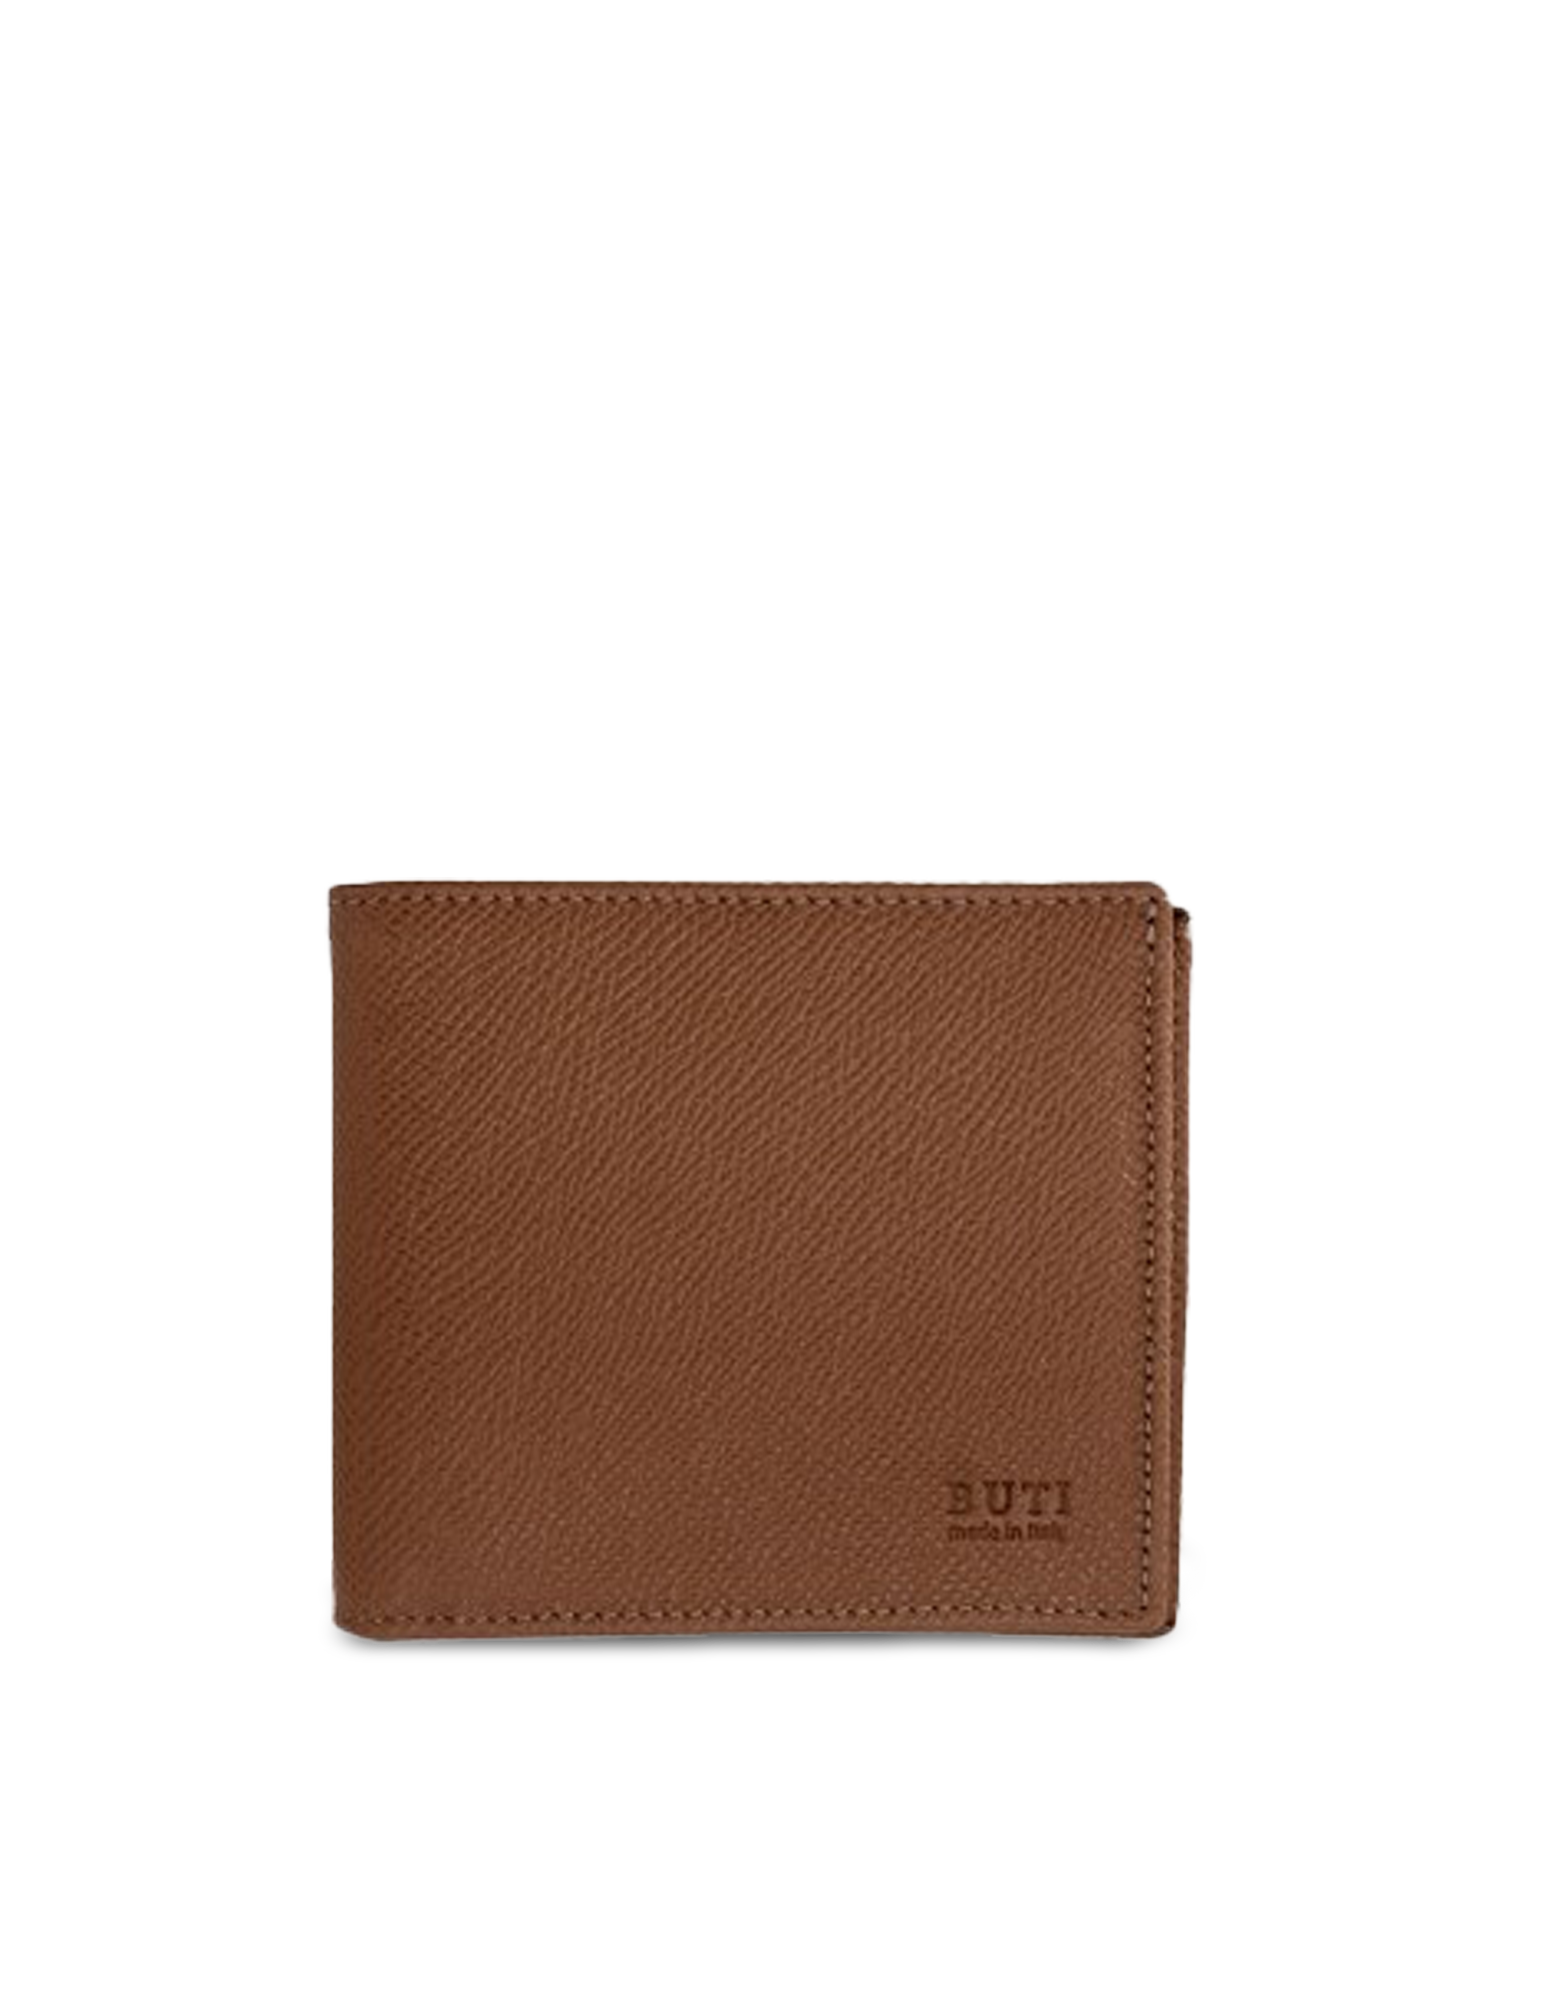 Buti Squared Saffiano Leather Men's Wallet